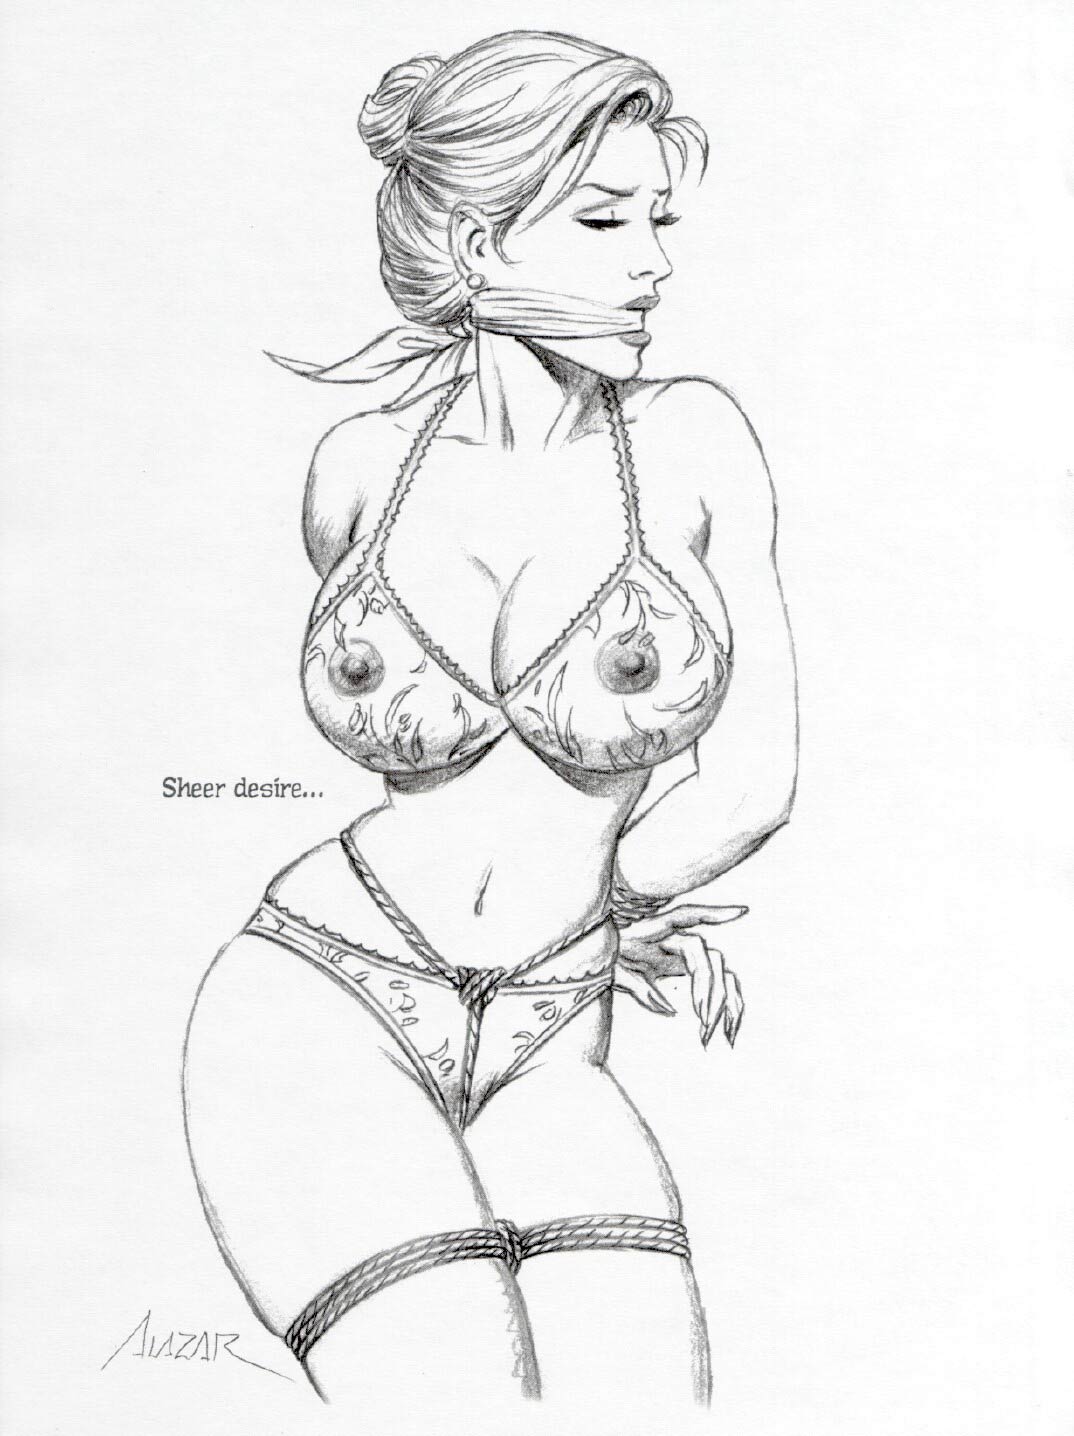 Perfect Black Tits Bondage - Book Of Bondage Vol.2 - Cruel BDSM comics